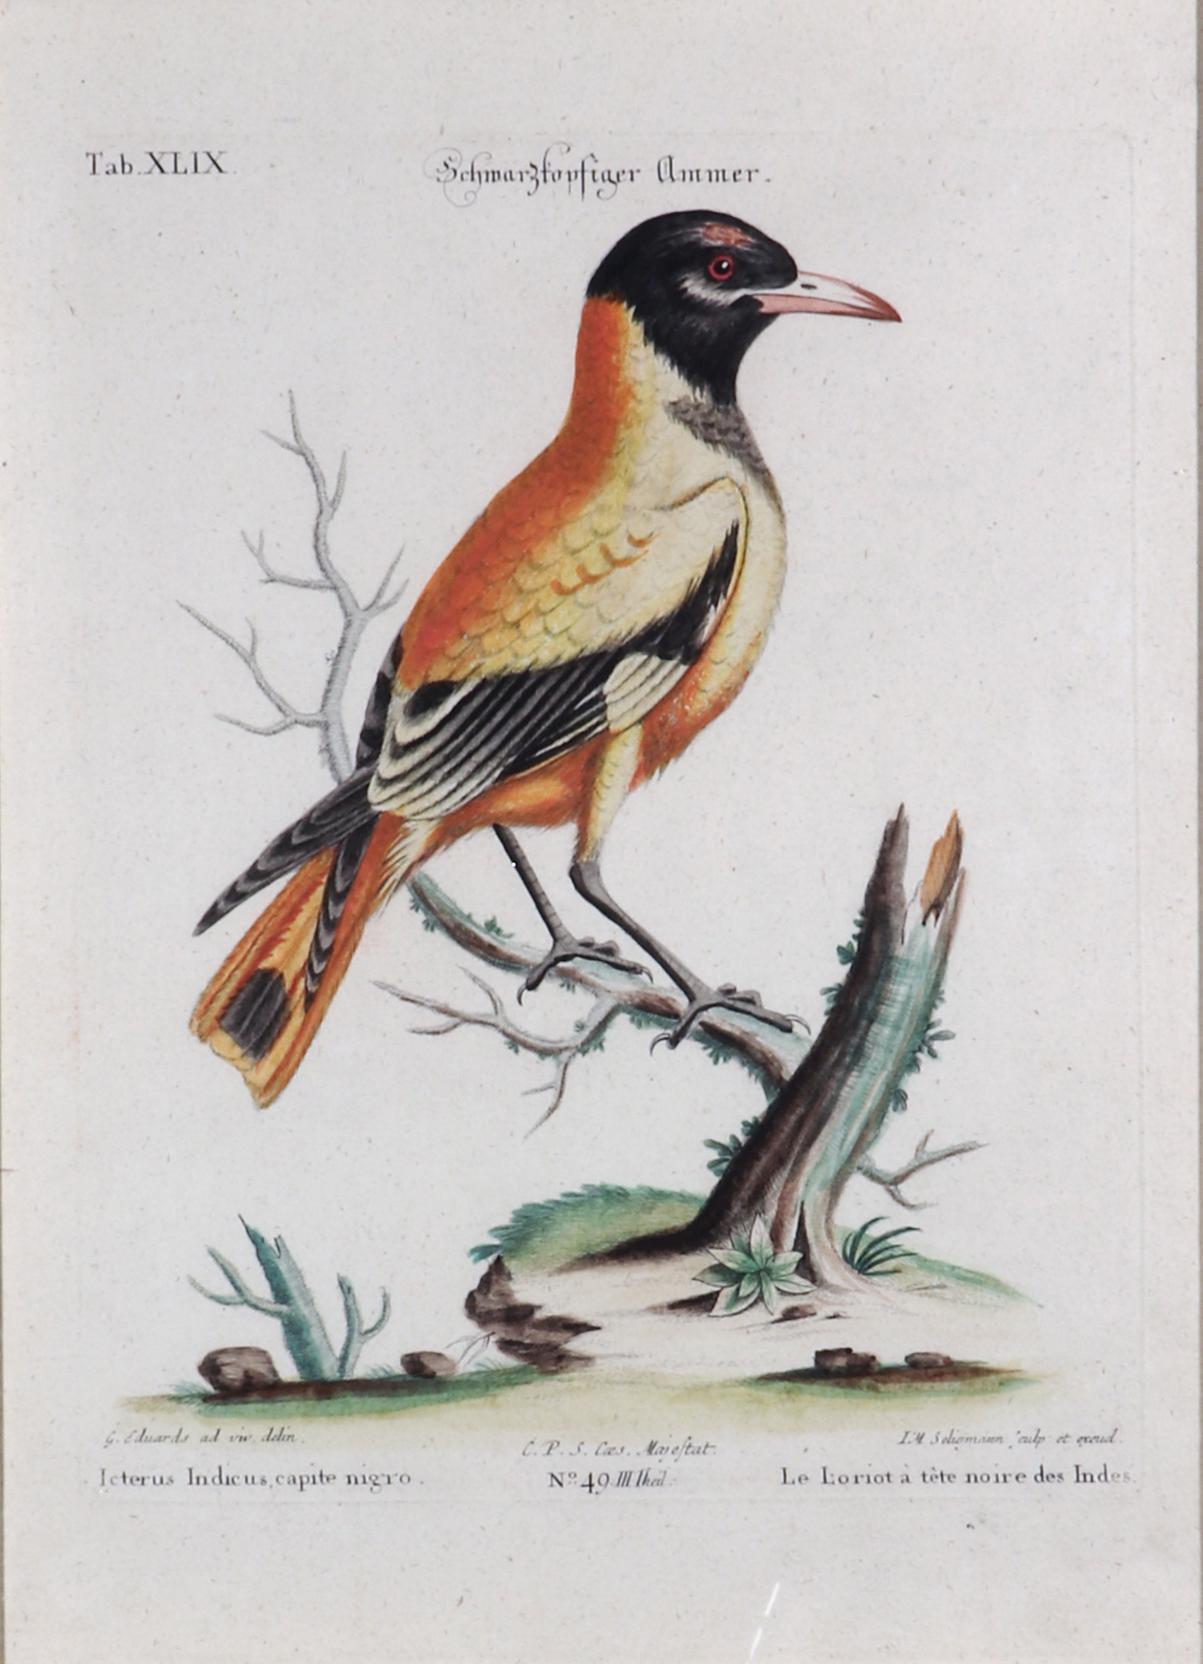 Johann Seligmann Vogelgravur, 
Tab XLIX, 
Le Loriot a tete noires Indes,
1770s

Der Johann-Seligmann-Stich aus der französischen Ausgabe wurde bei der Veröffentlichung handkoloriert und ist nun in einen Decoupage-Rahmen montiert.

Die Stiche mit